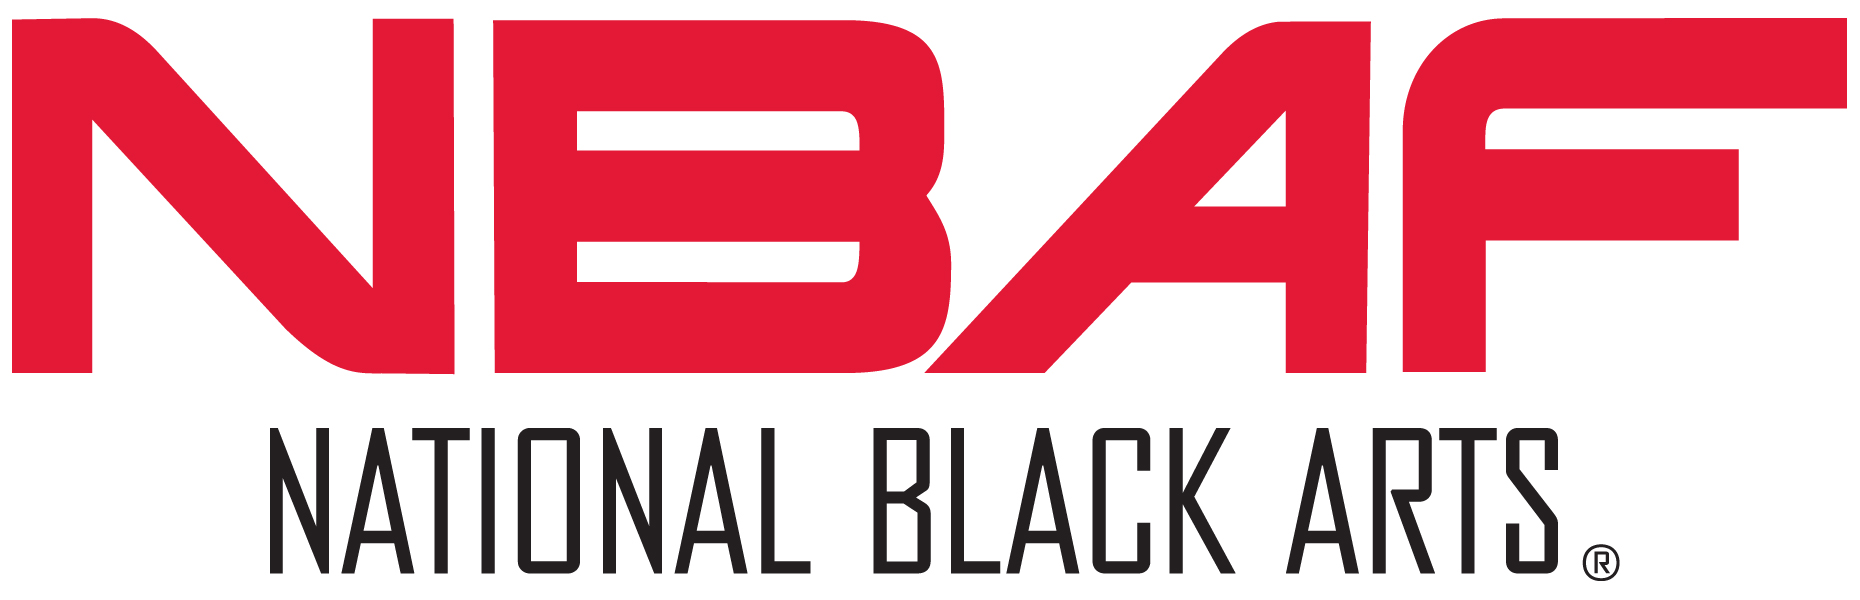 NBAF: National Black Arts